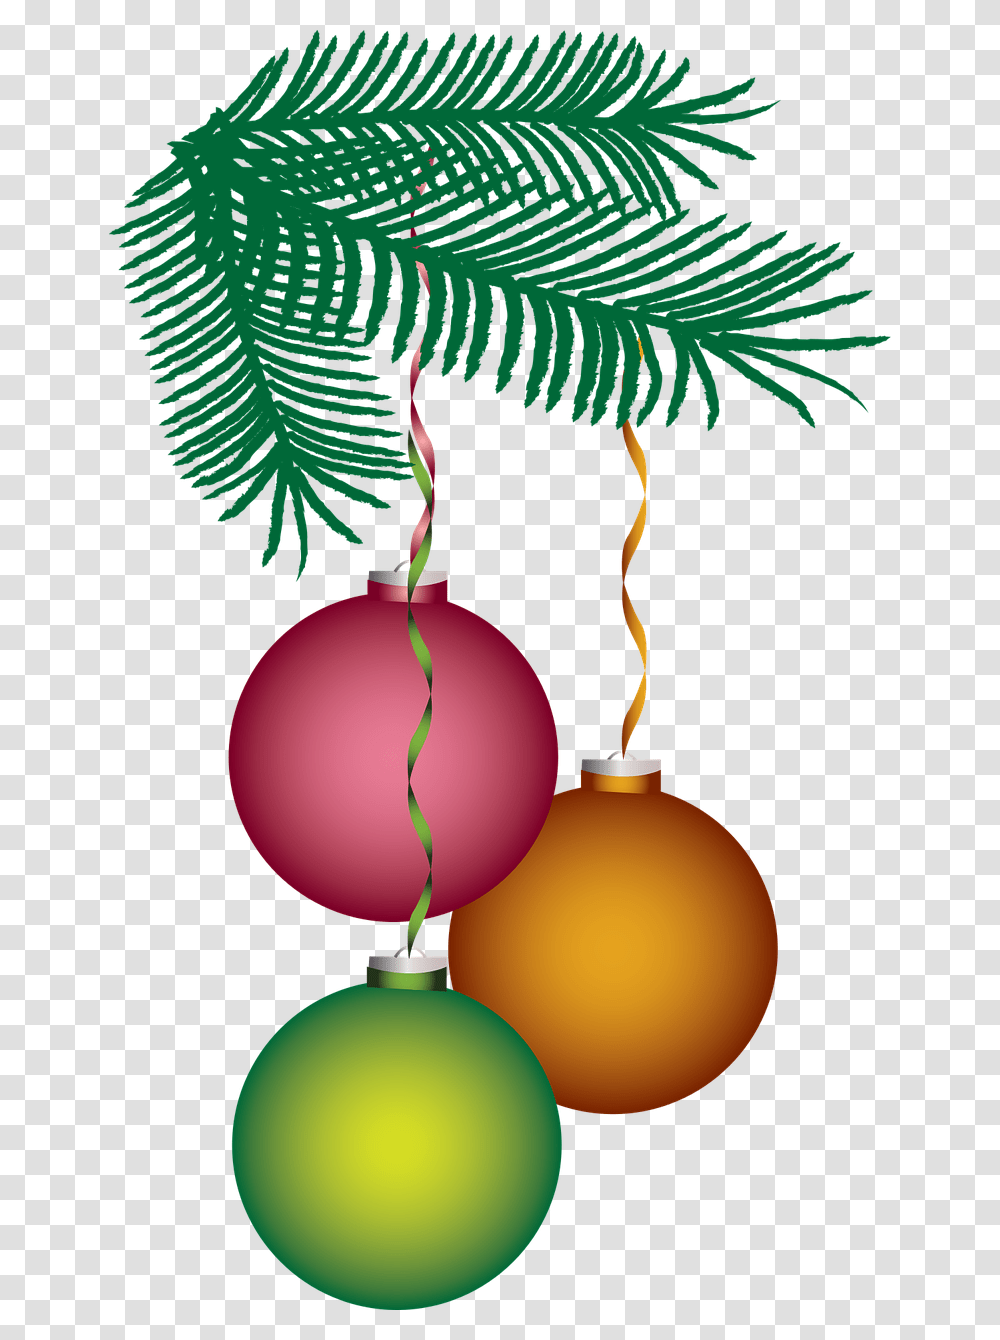 Coisas De Natal, Ornament, Tree, Plant, Sphere Transparent Png